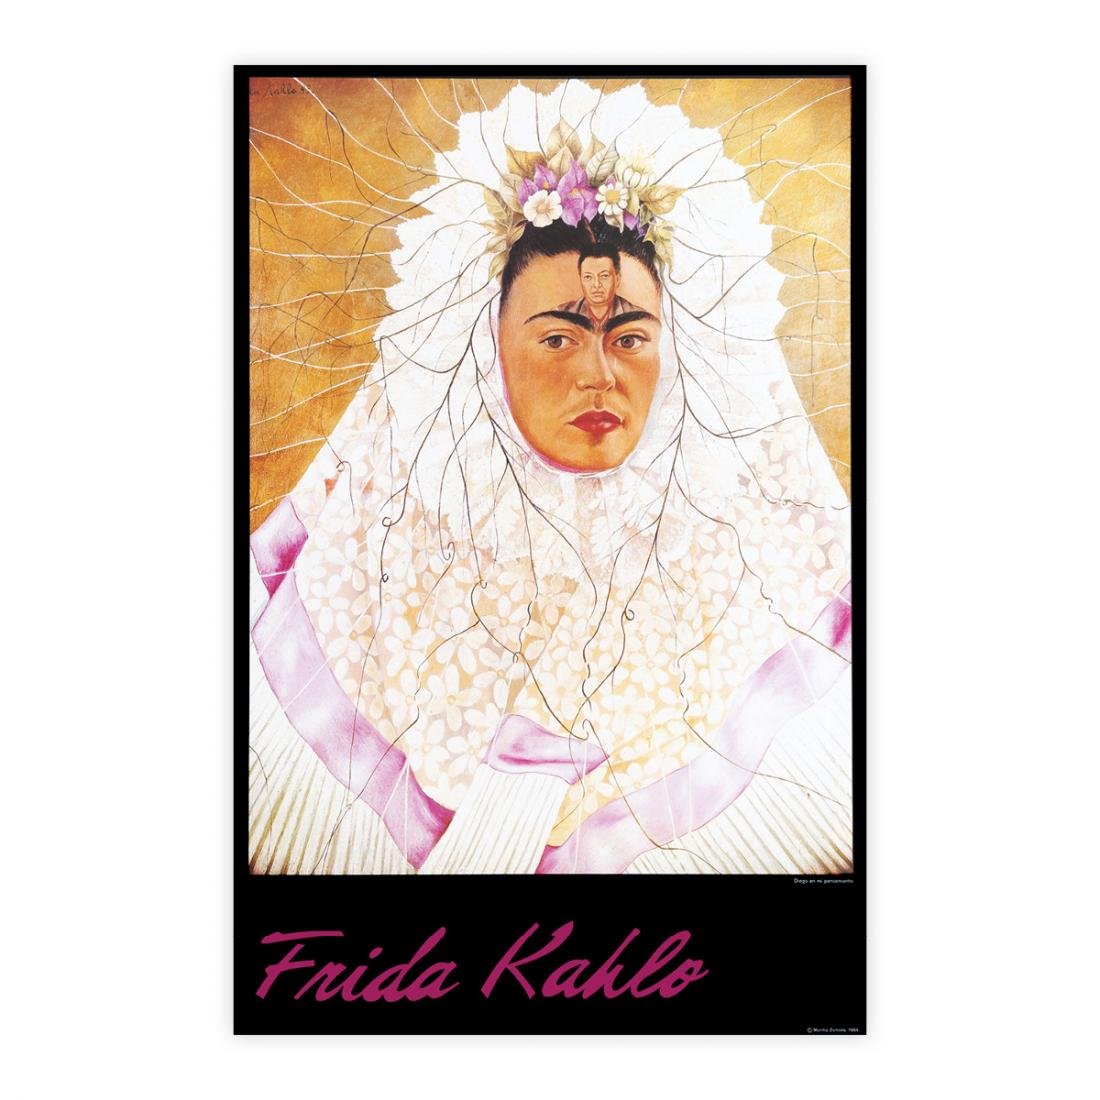 Frida Kahlo - Diego en mi pensamiento